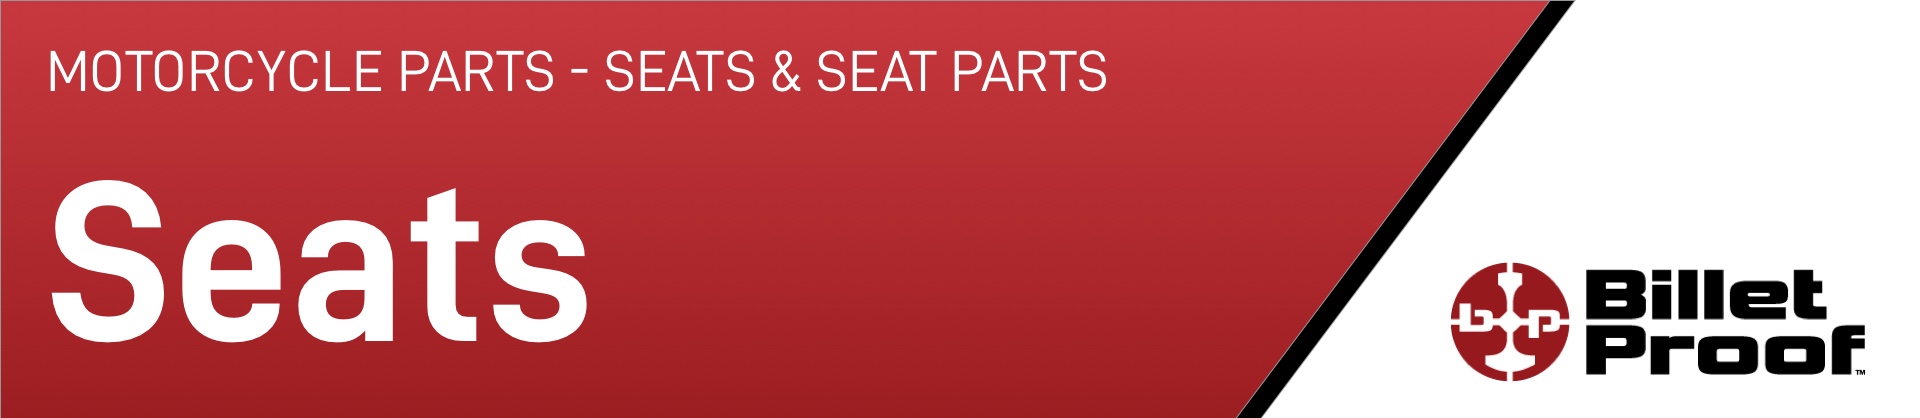 motorcycle-parts-seats-seat-parts-seats.jpg